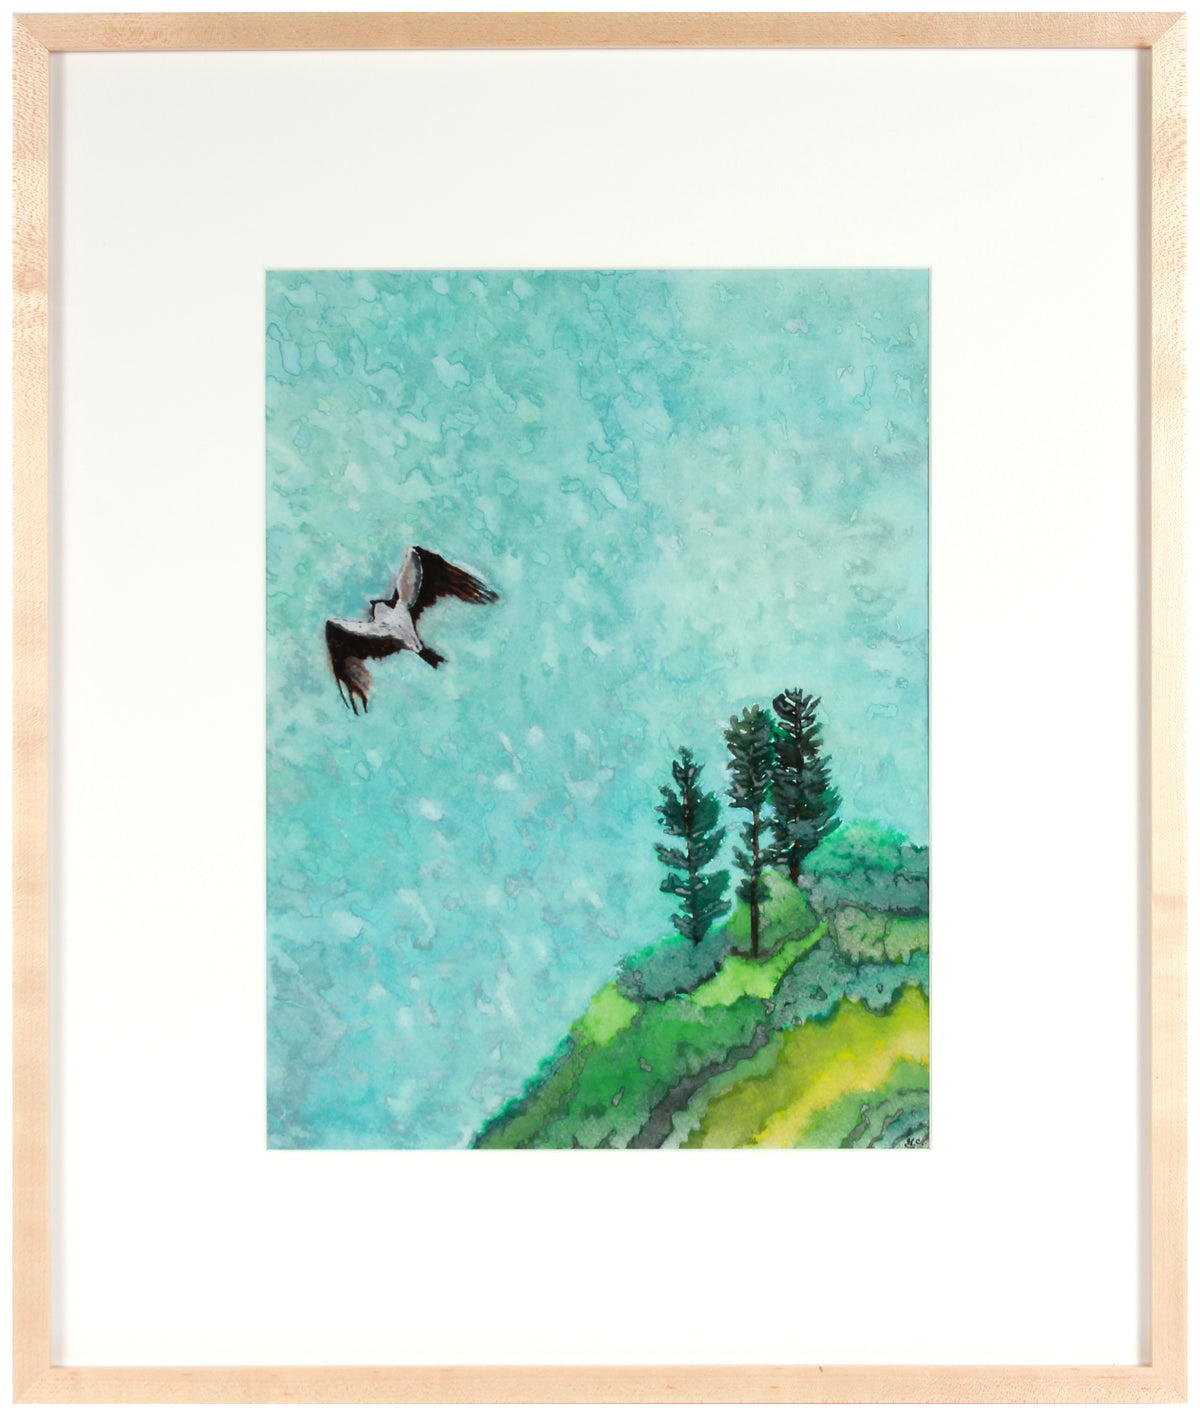 &lt;i&gt;Bird of Prey&lt;/i&gt; &lt;br&gt;2018 Gouache &amp; Watercolor &lt;br&gt;&lt;br&gt;#A5354